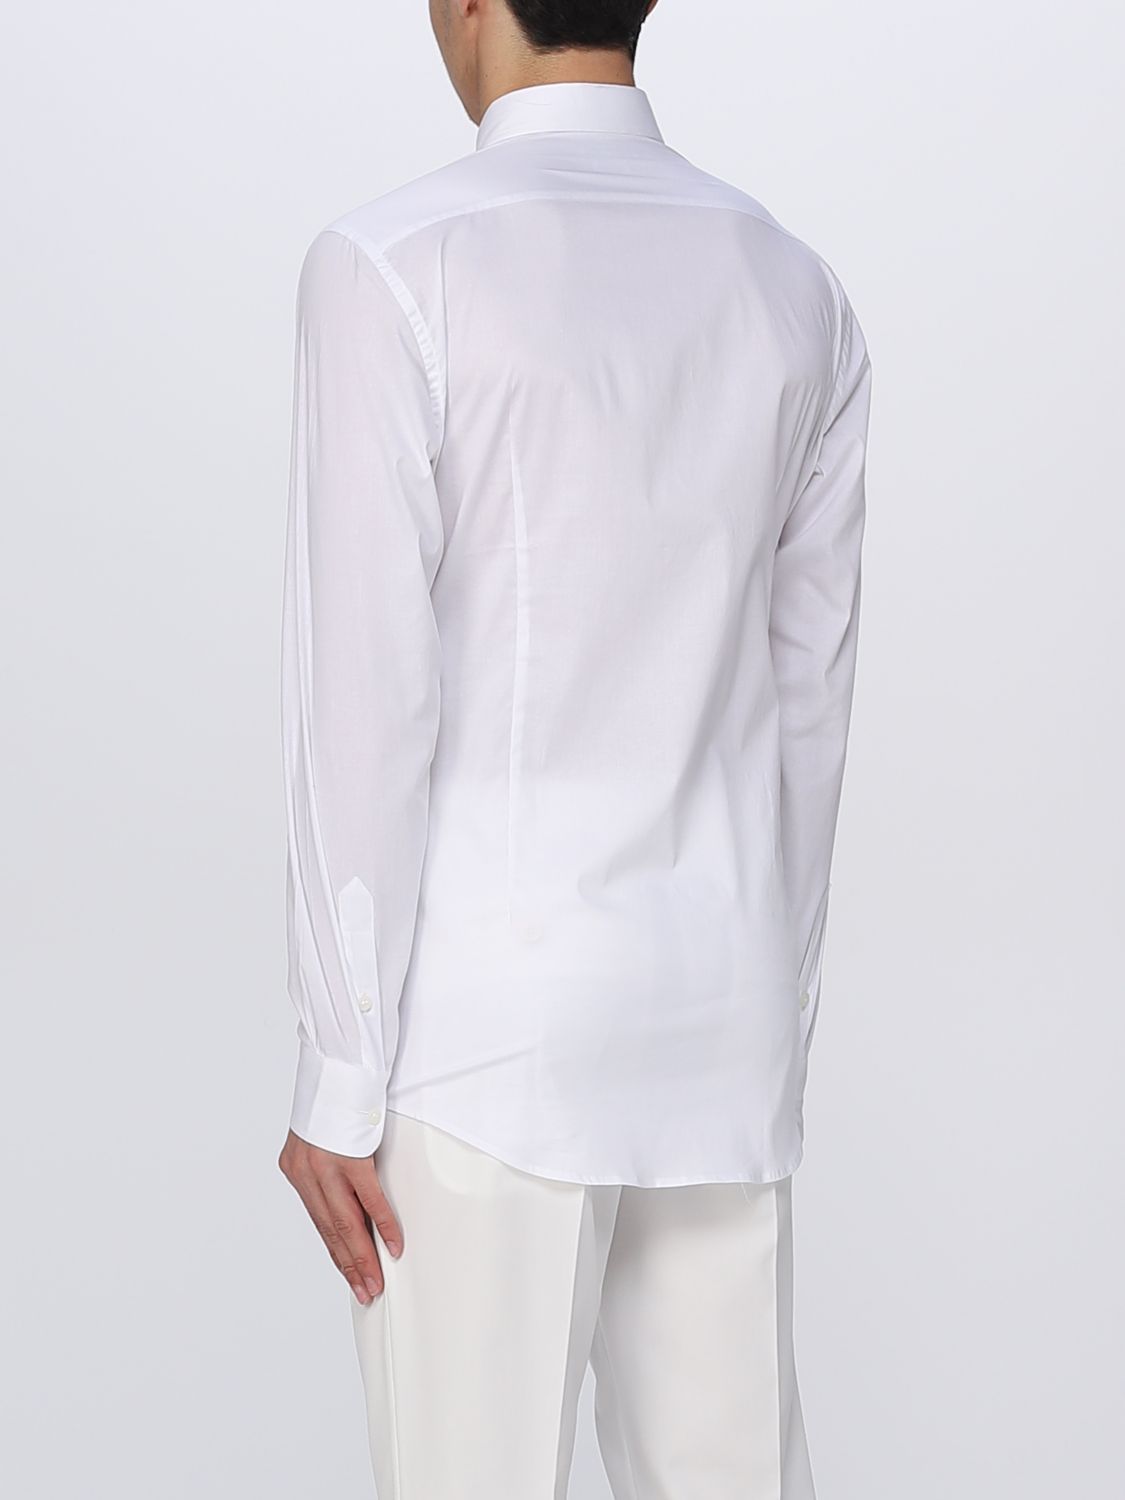 Shirt Daniele Alessandrini: Daniele Alessandrini shirt for men white 2